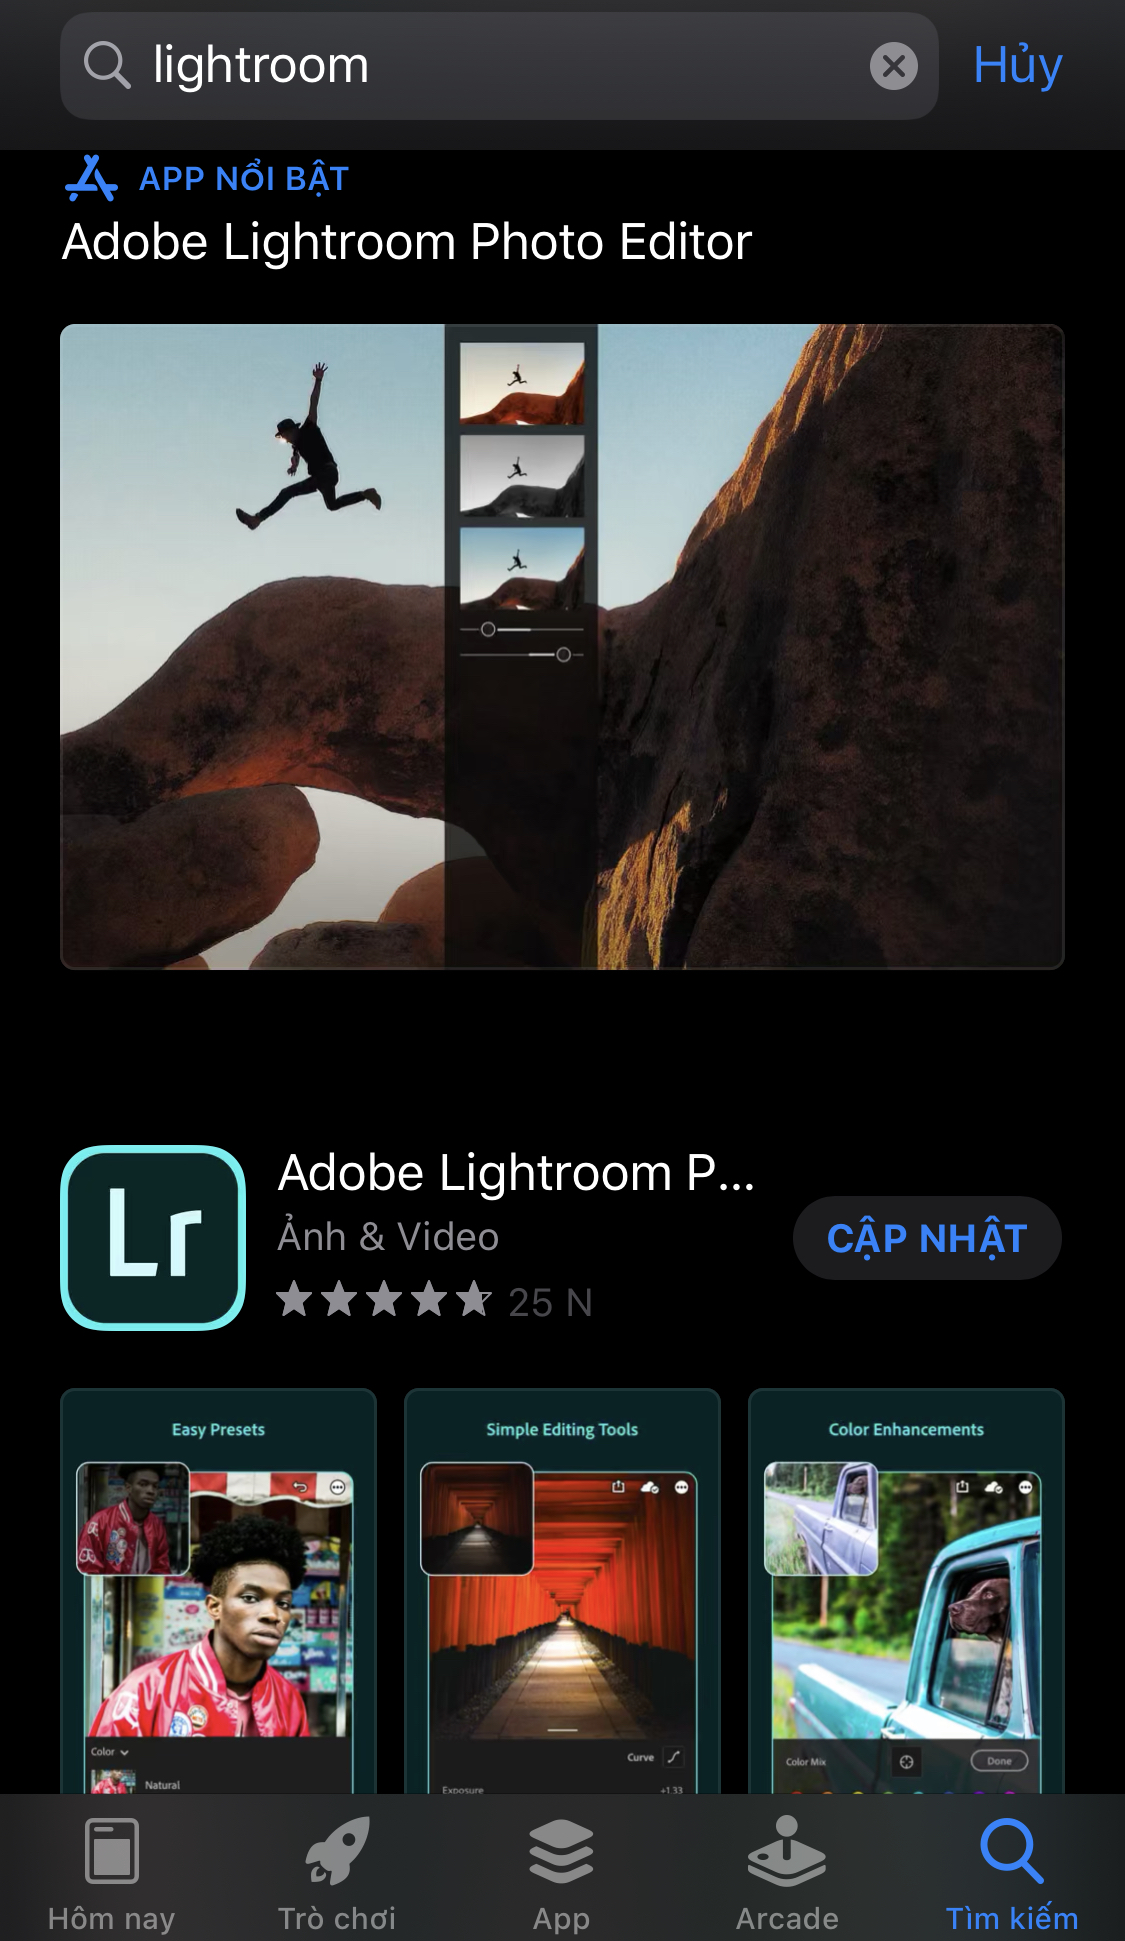 Cách tải ứng dụng Adobe Lightroom Photo Editor cho iPhone, iPad 1